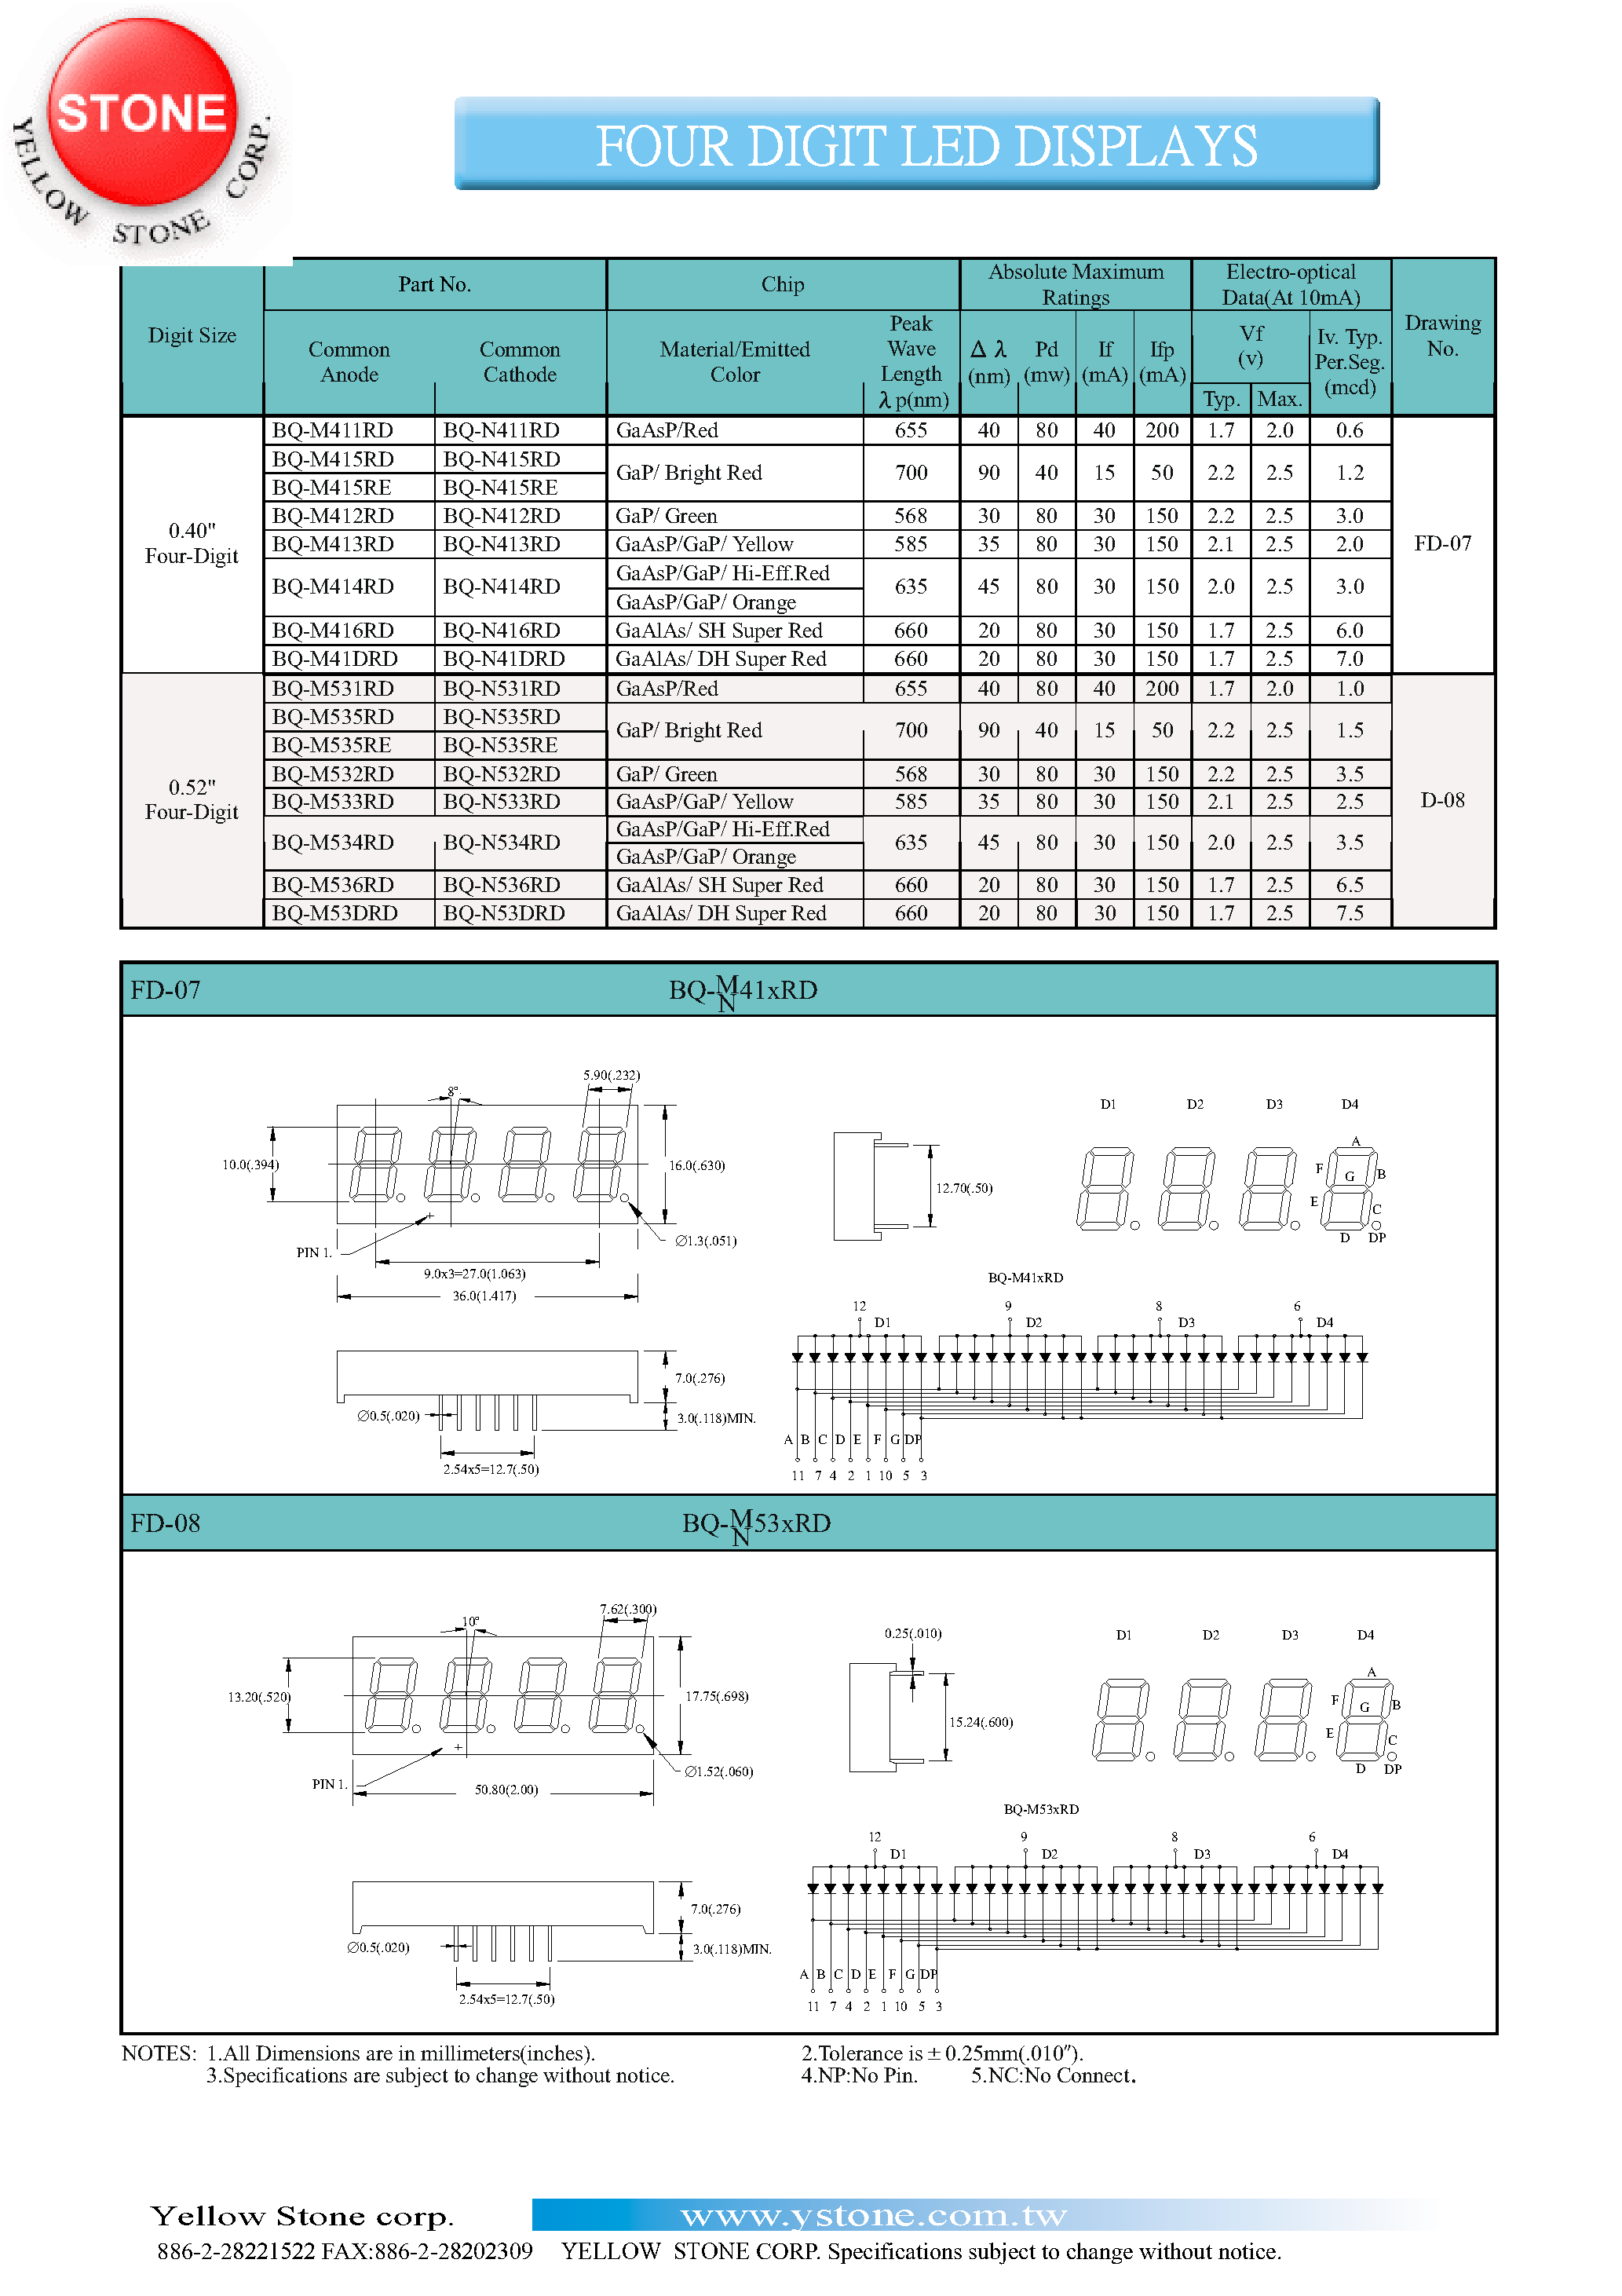 Datasheet BQ-M411RD - FOUR DIGIT LED DISPLAYS page 1